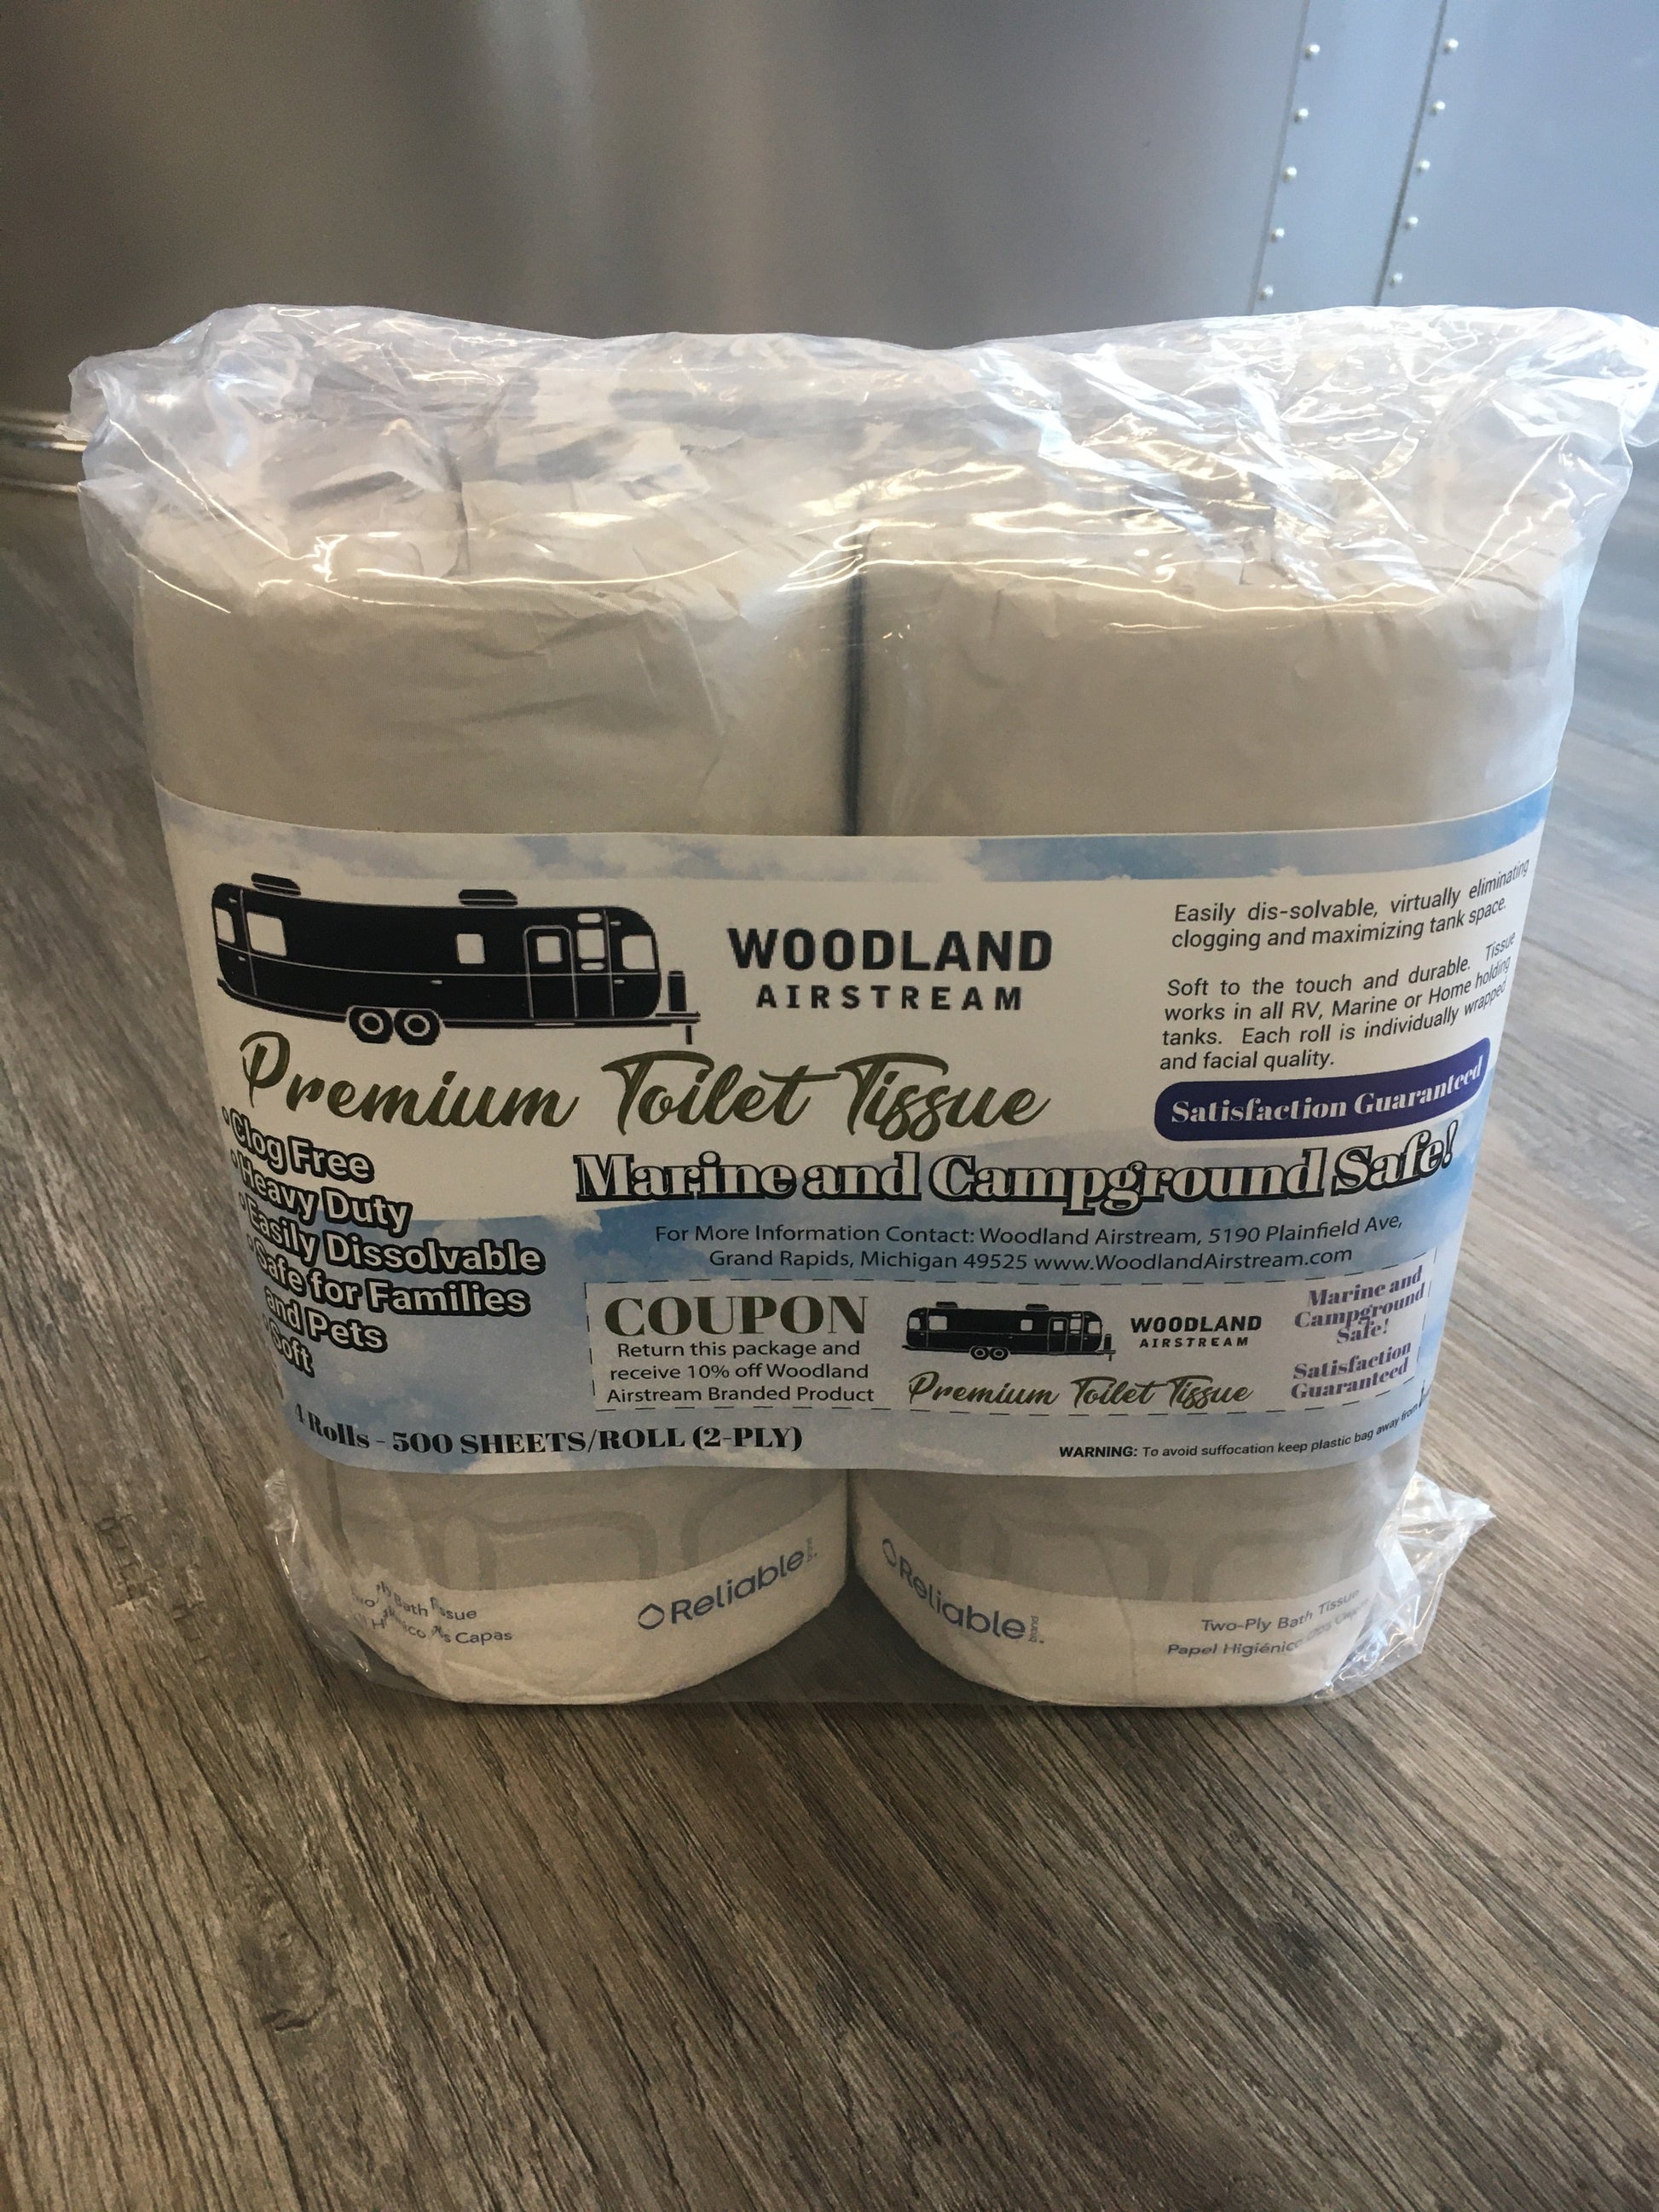 Woodland Airstream TP13 Premium RV Toilet Tissue, Pack of 4